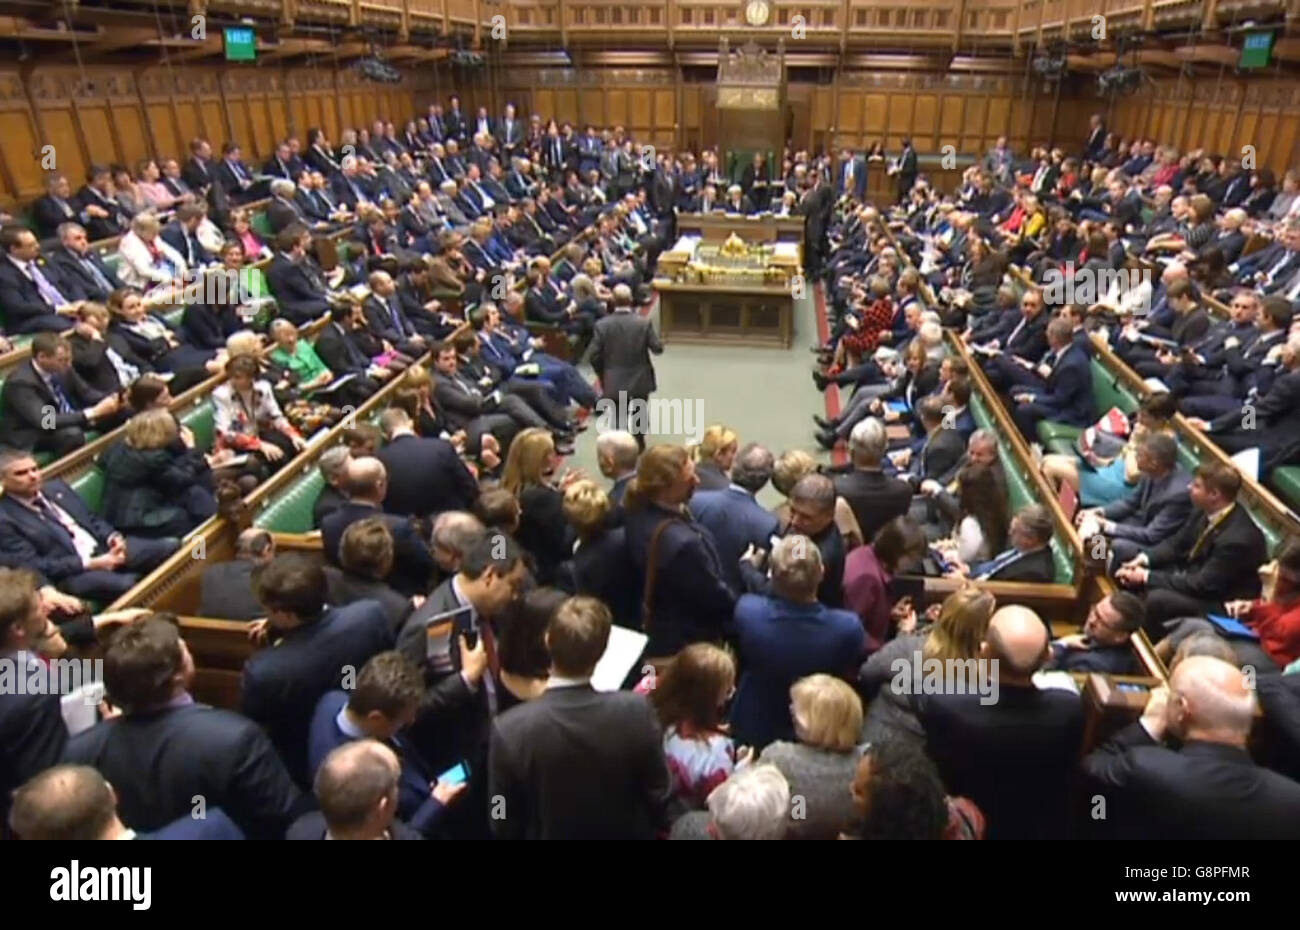 Les députés se réunissent pour entendre le résultat d'un vote à la Chambre des communes, à Londres, alors que le gouvernement a subi une défaite humiliante des communes suite aux plans de prolongation des heures de négociation du dimanche, après que les rebelles conservateurs aient Uni leurs forces avec les travaillistes et le SNP. Banque D'Images